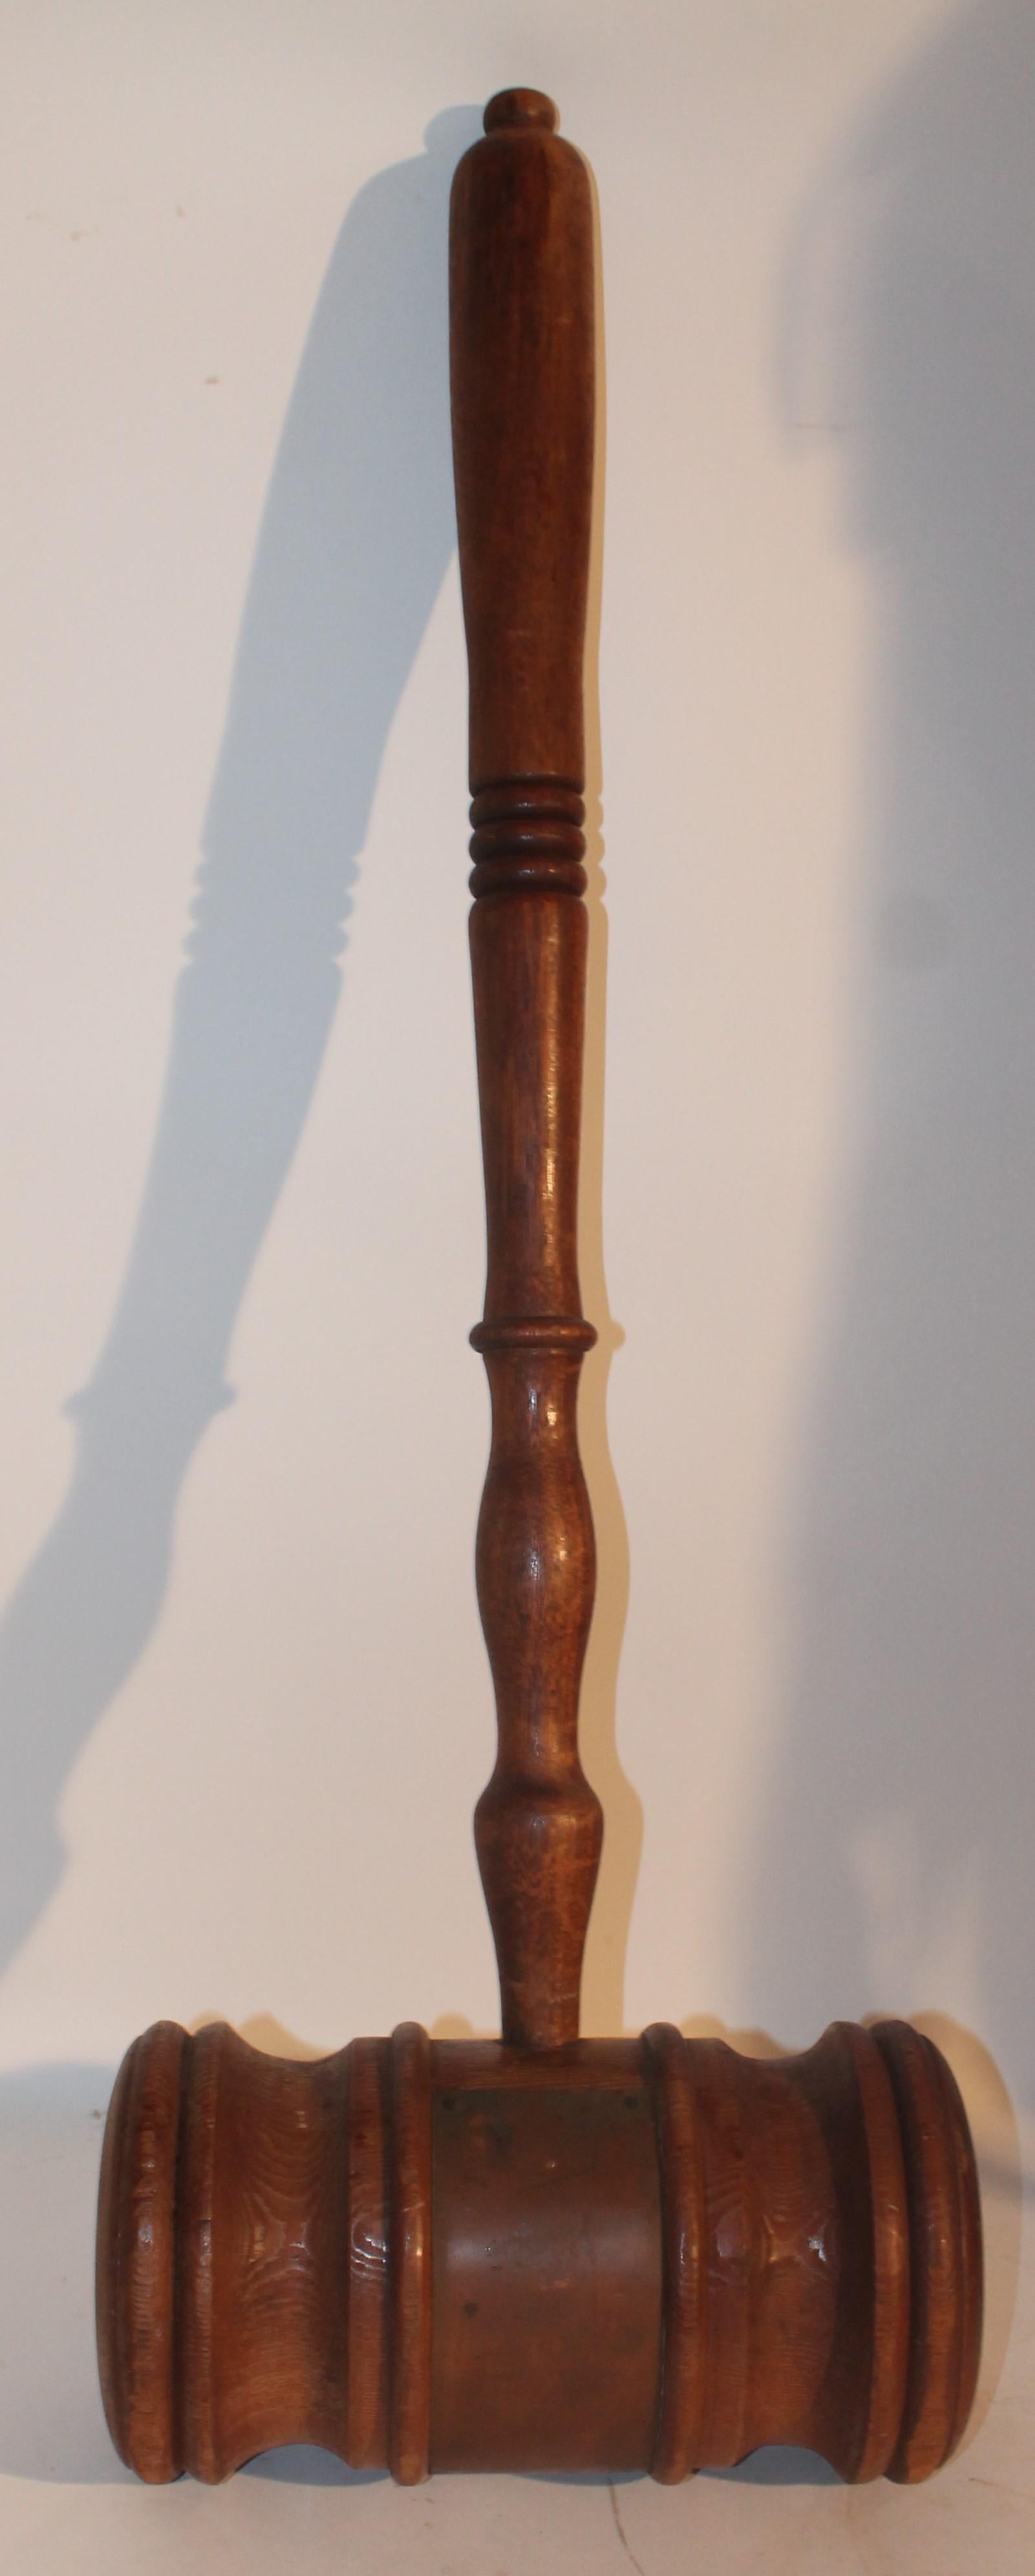 Dieser Hammer ist in sehr gutem Zustand und war ein Präsentationsstück.

Die Kupferplatte auf dem Hammer lautet wie folgt / Datiert 1941

Präsentiert von
Der Club Corona 20-30
Gewonnen von
Rote Länder #121 - 1-12-41
Corona26 #23